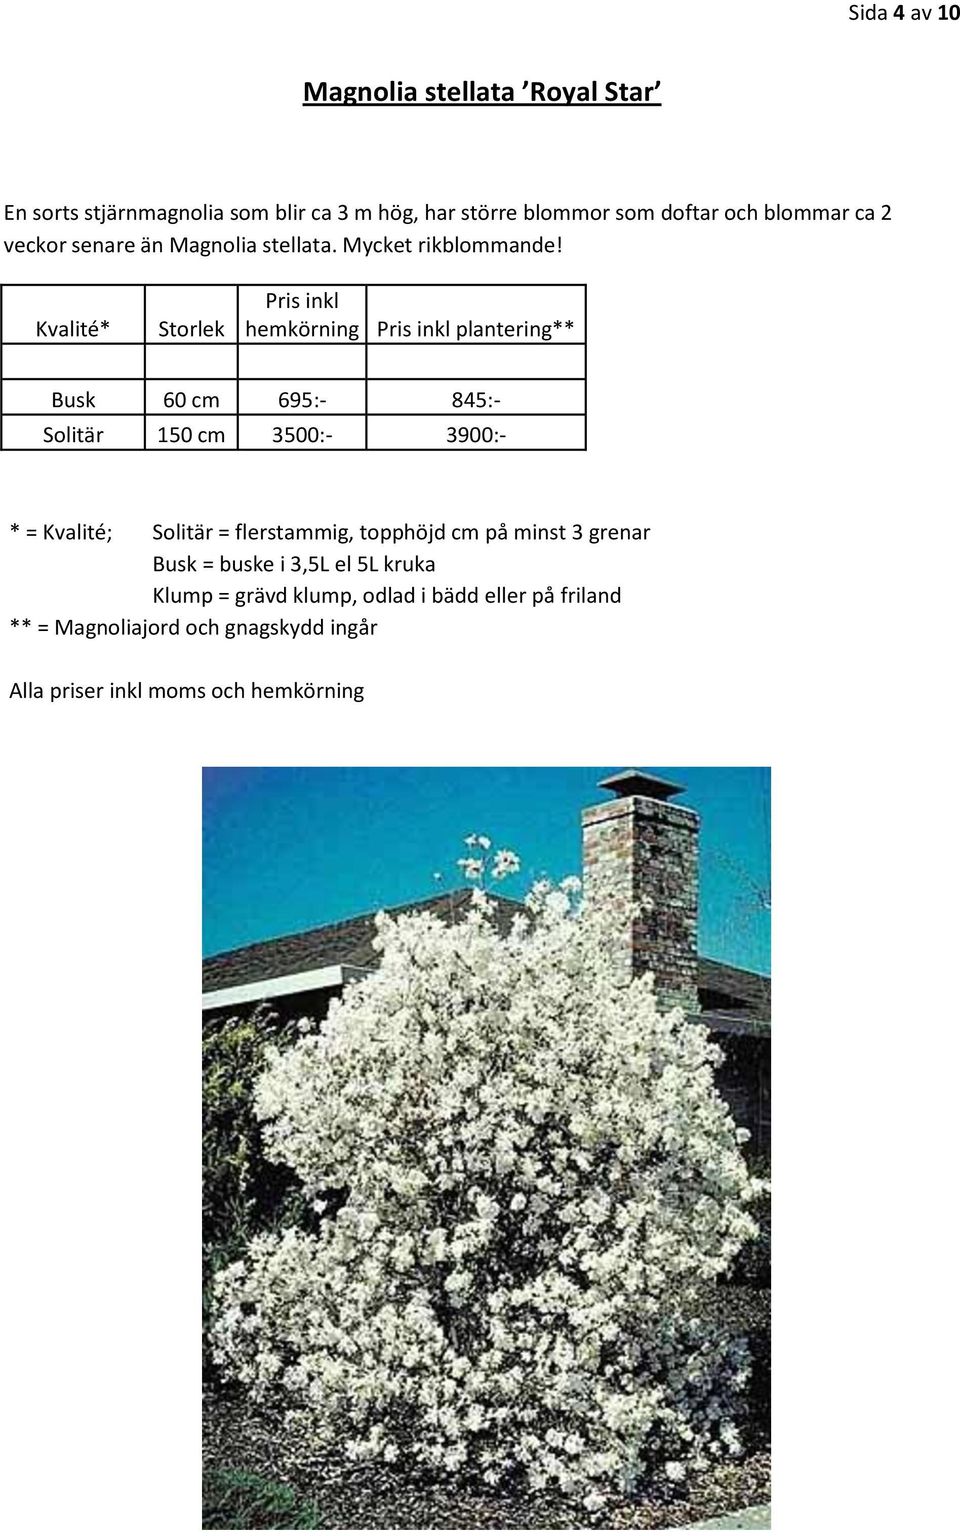 doftar och blommar ca 2 veckor senare än Magnolia stellata.